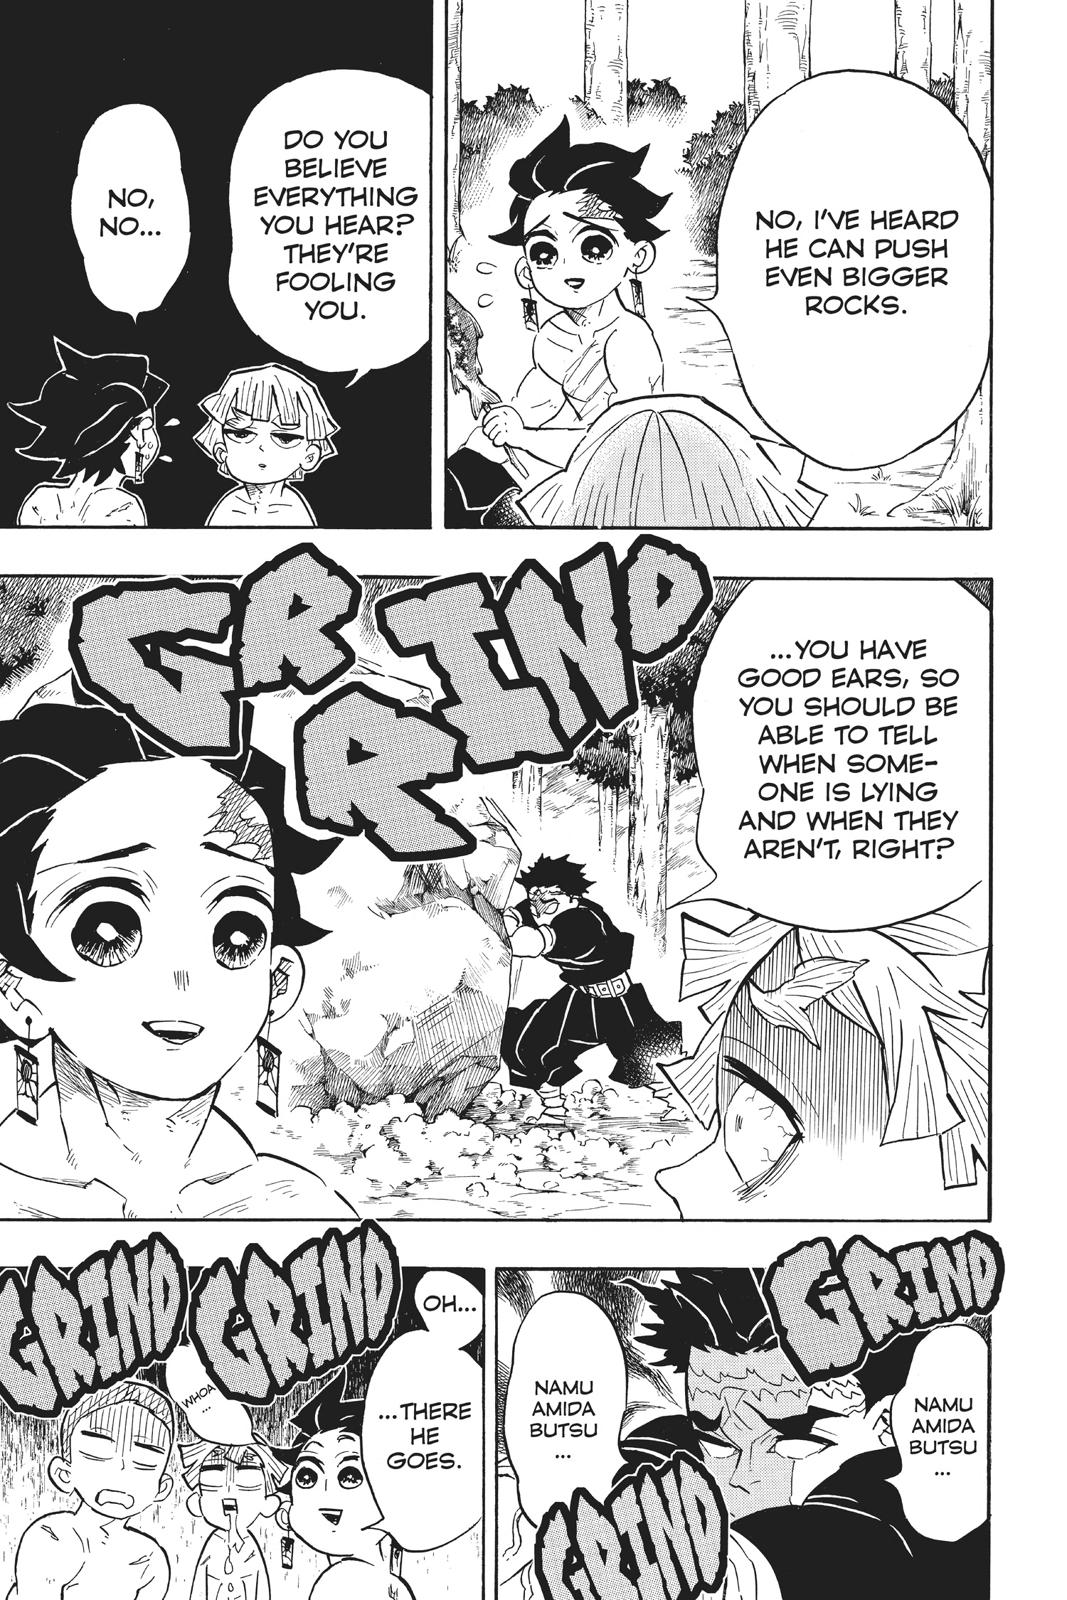 Demon Slayer Manga Manga Chapter - 134 - image 8